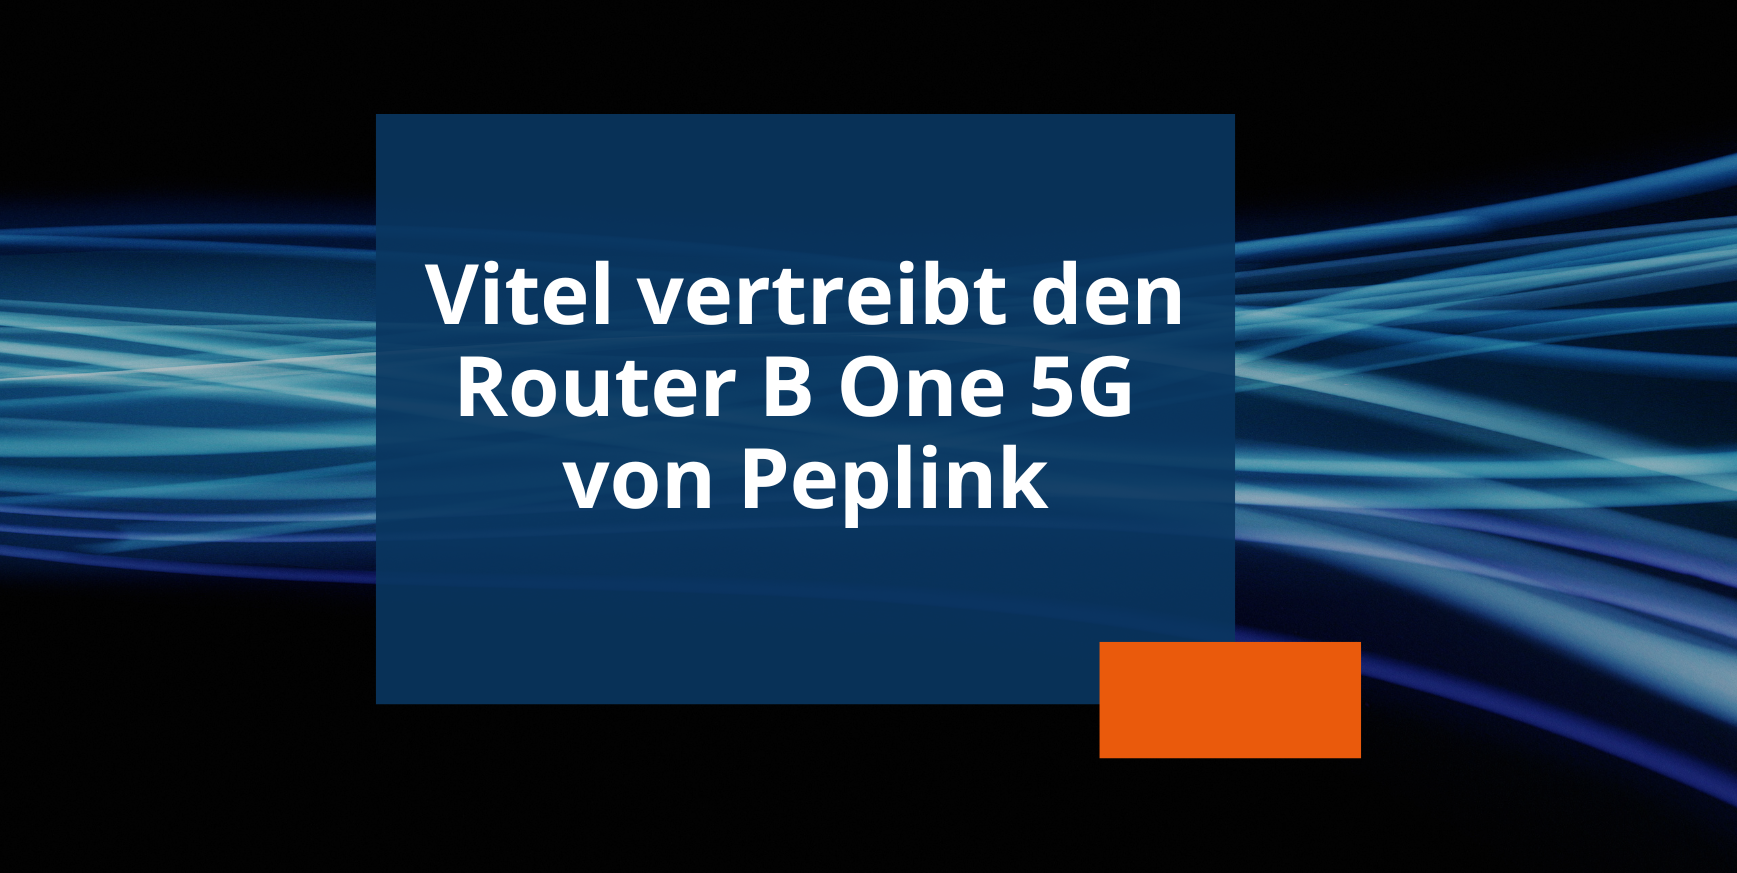 Router B One 5G von Peplink